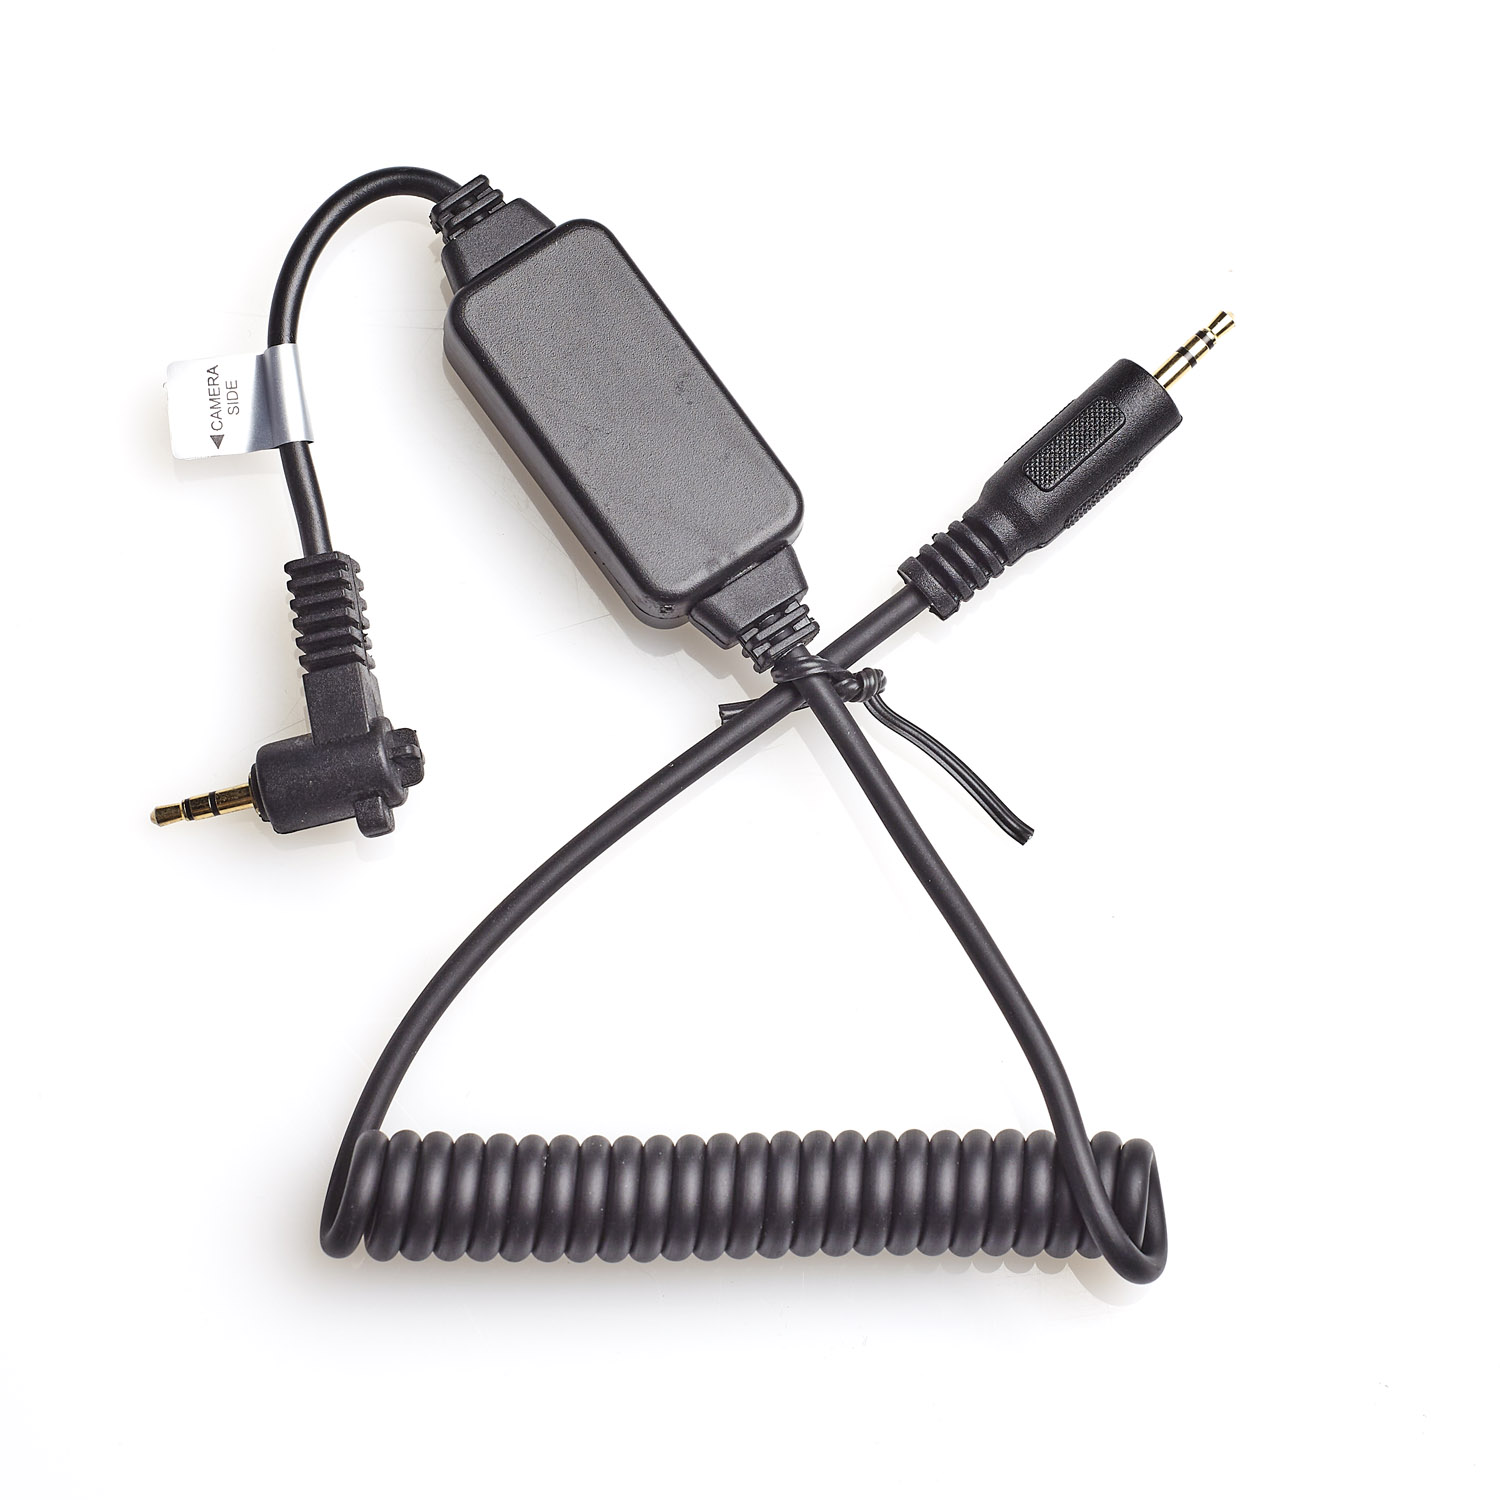 F9980-8 cable disparador compatible con Olympus RM-CB1